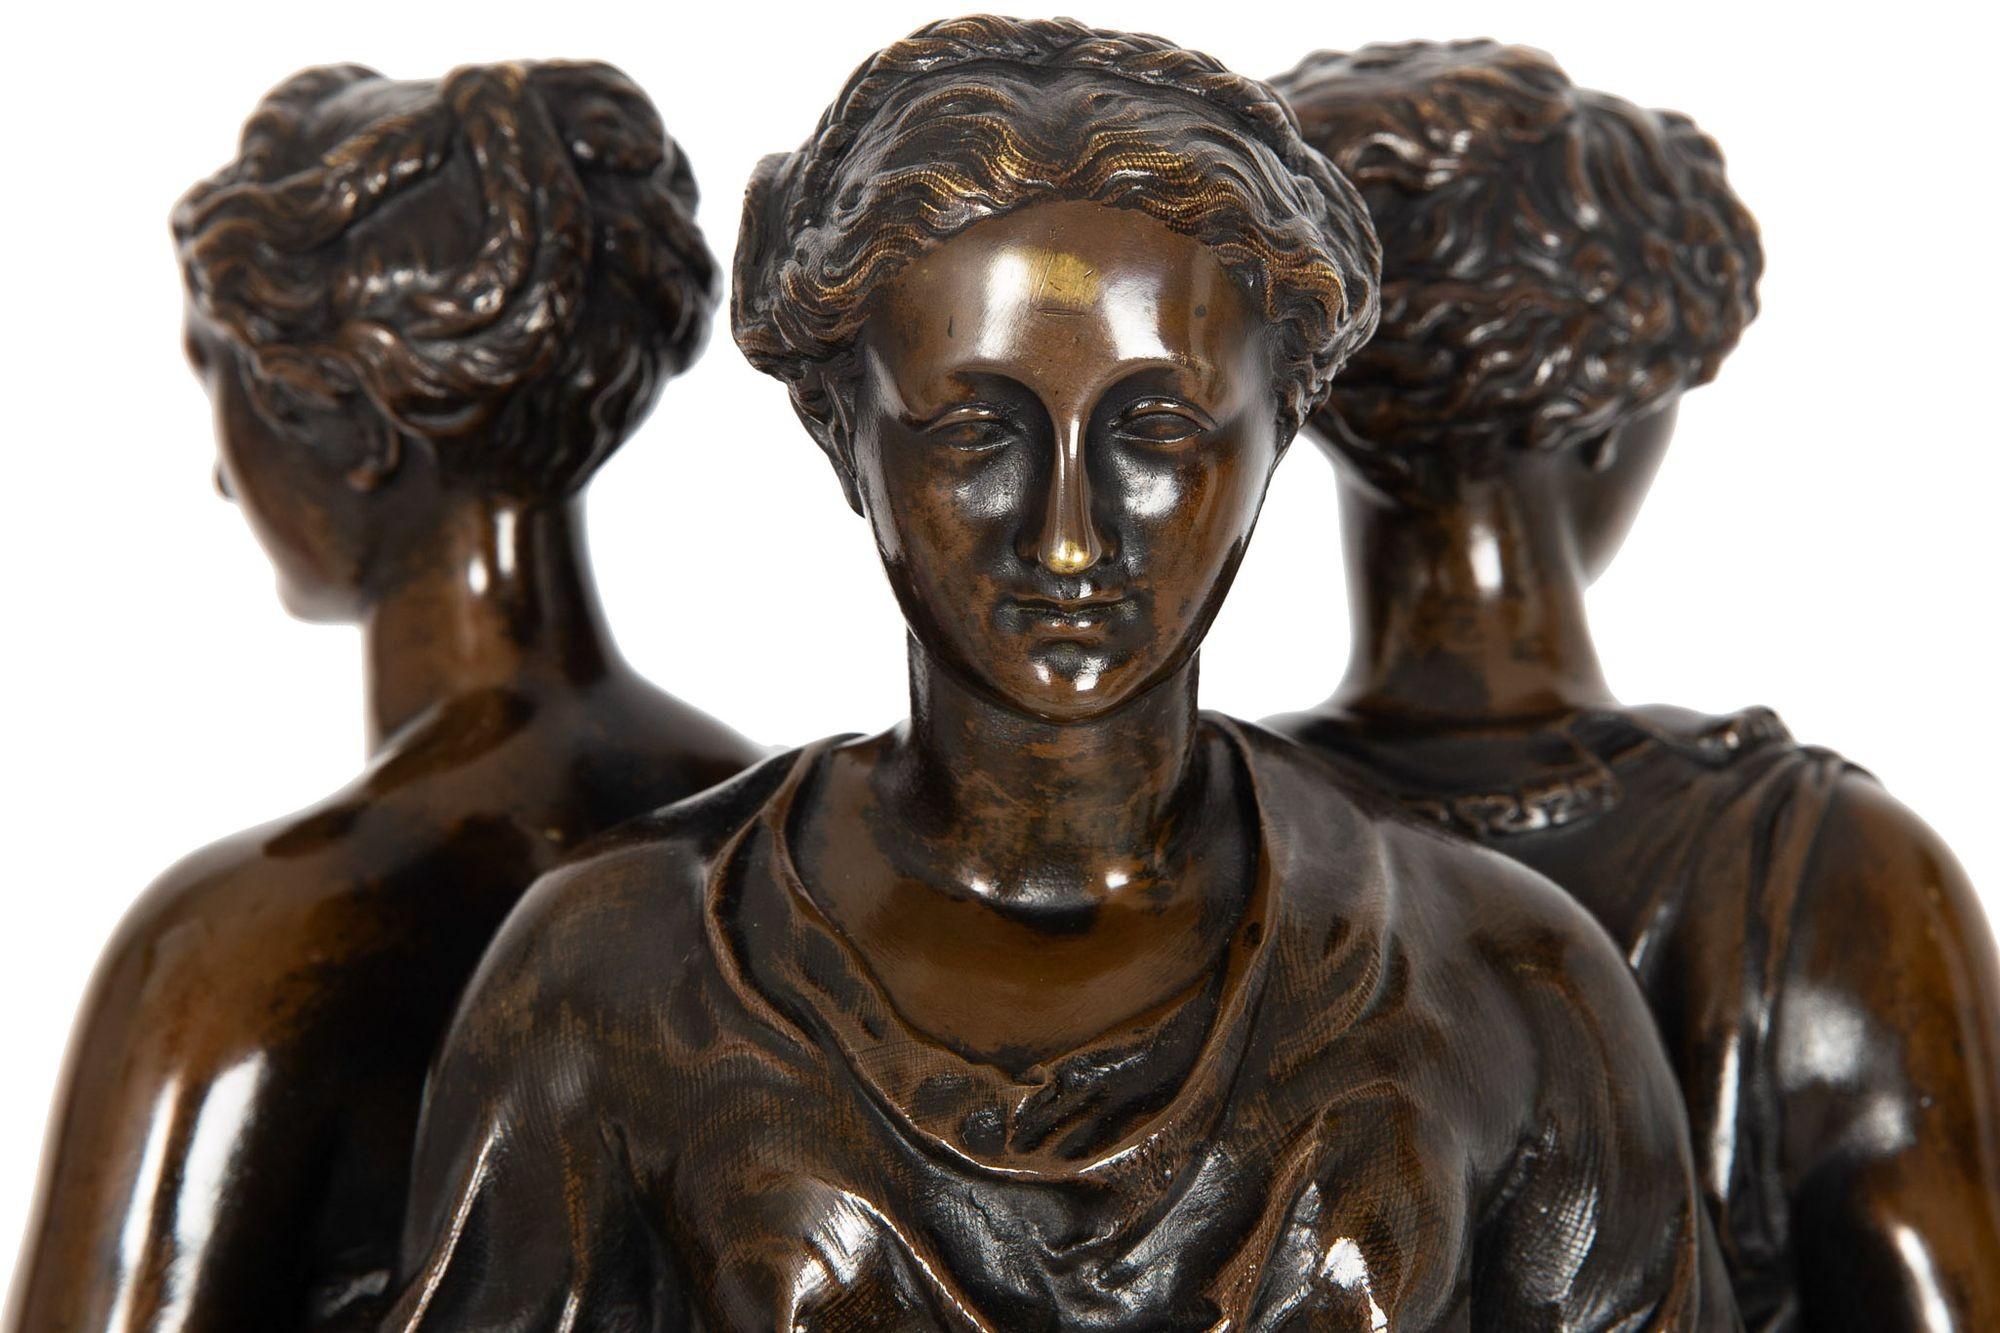 French Antique Bronze Sculpture “Three Graces” after Germain Pilon For Sale 1